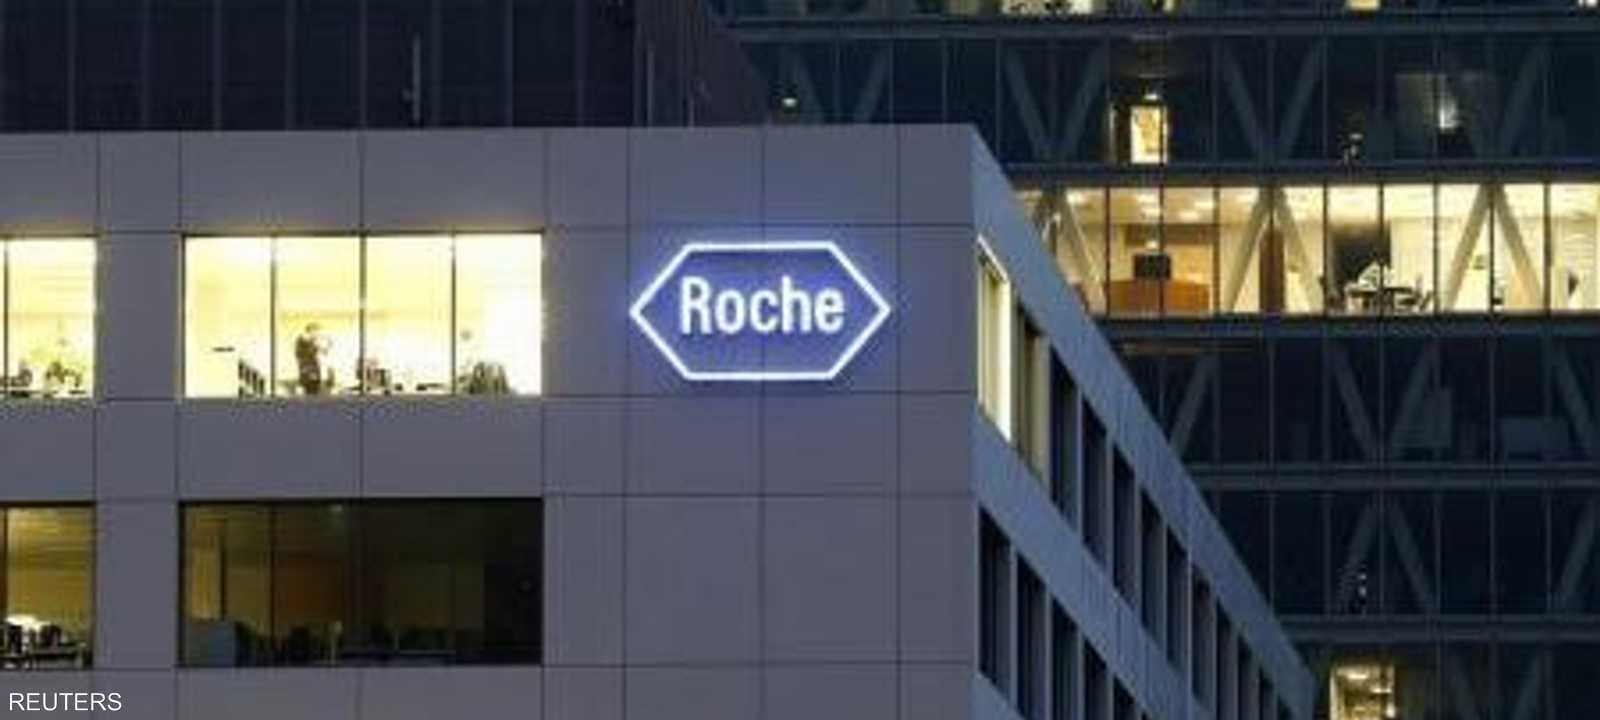 شعار شركة روش يظهر على منشأة في روتكريز في سويسرا